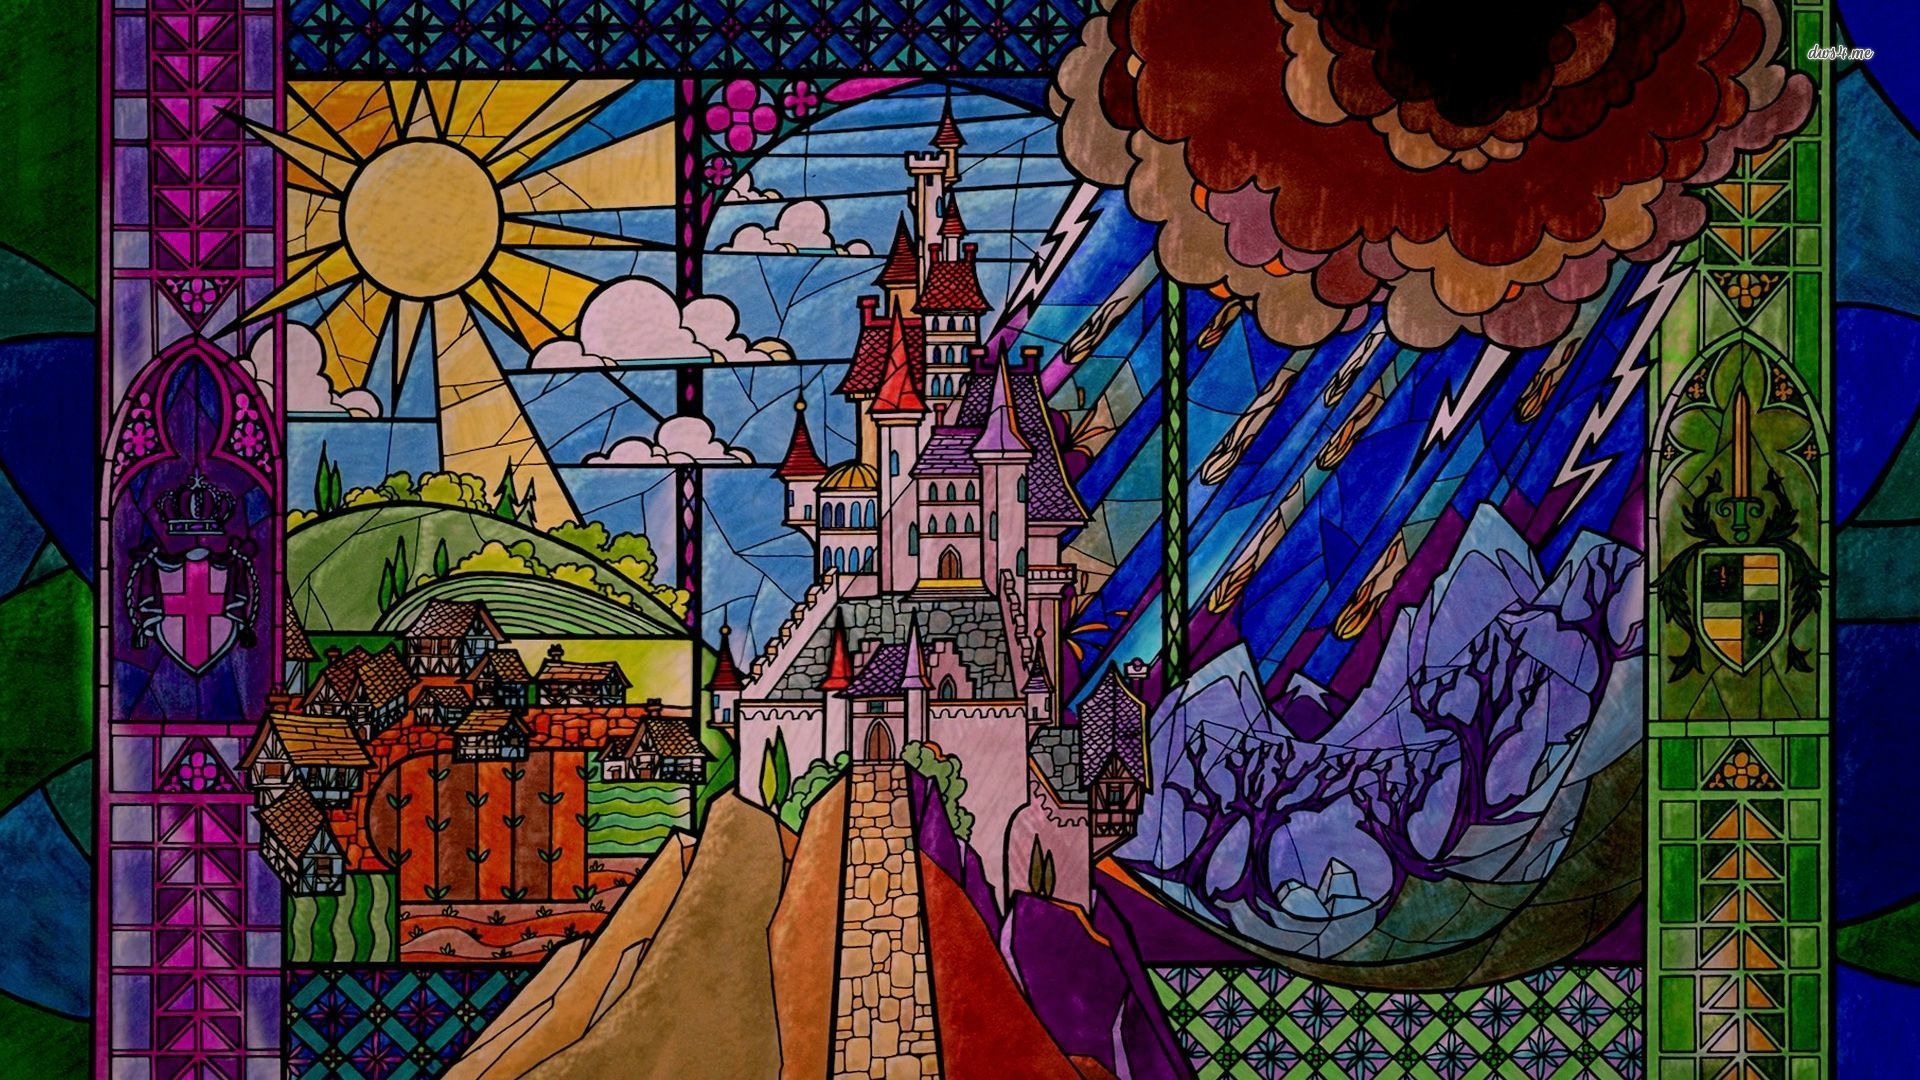 Sleeping Beauty Castle Wallpaper